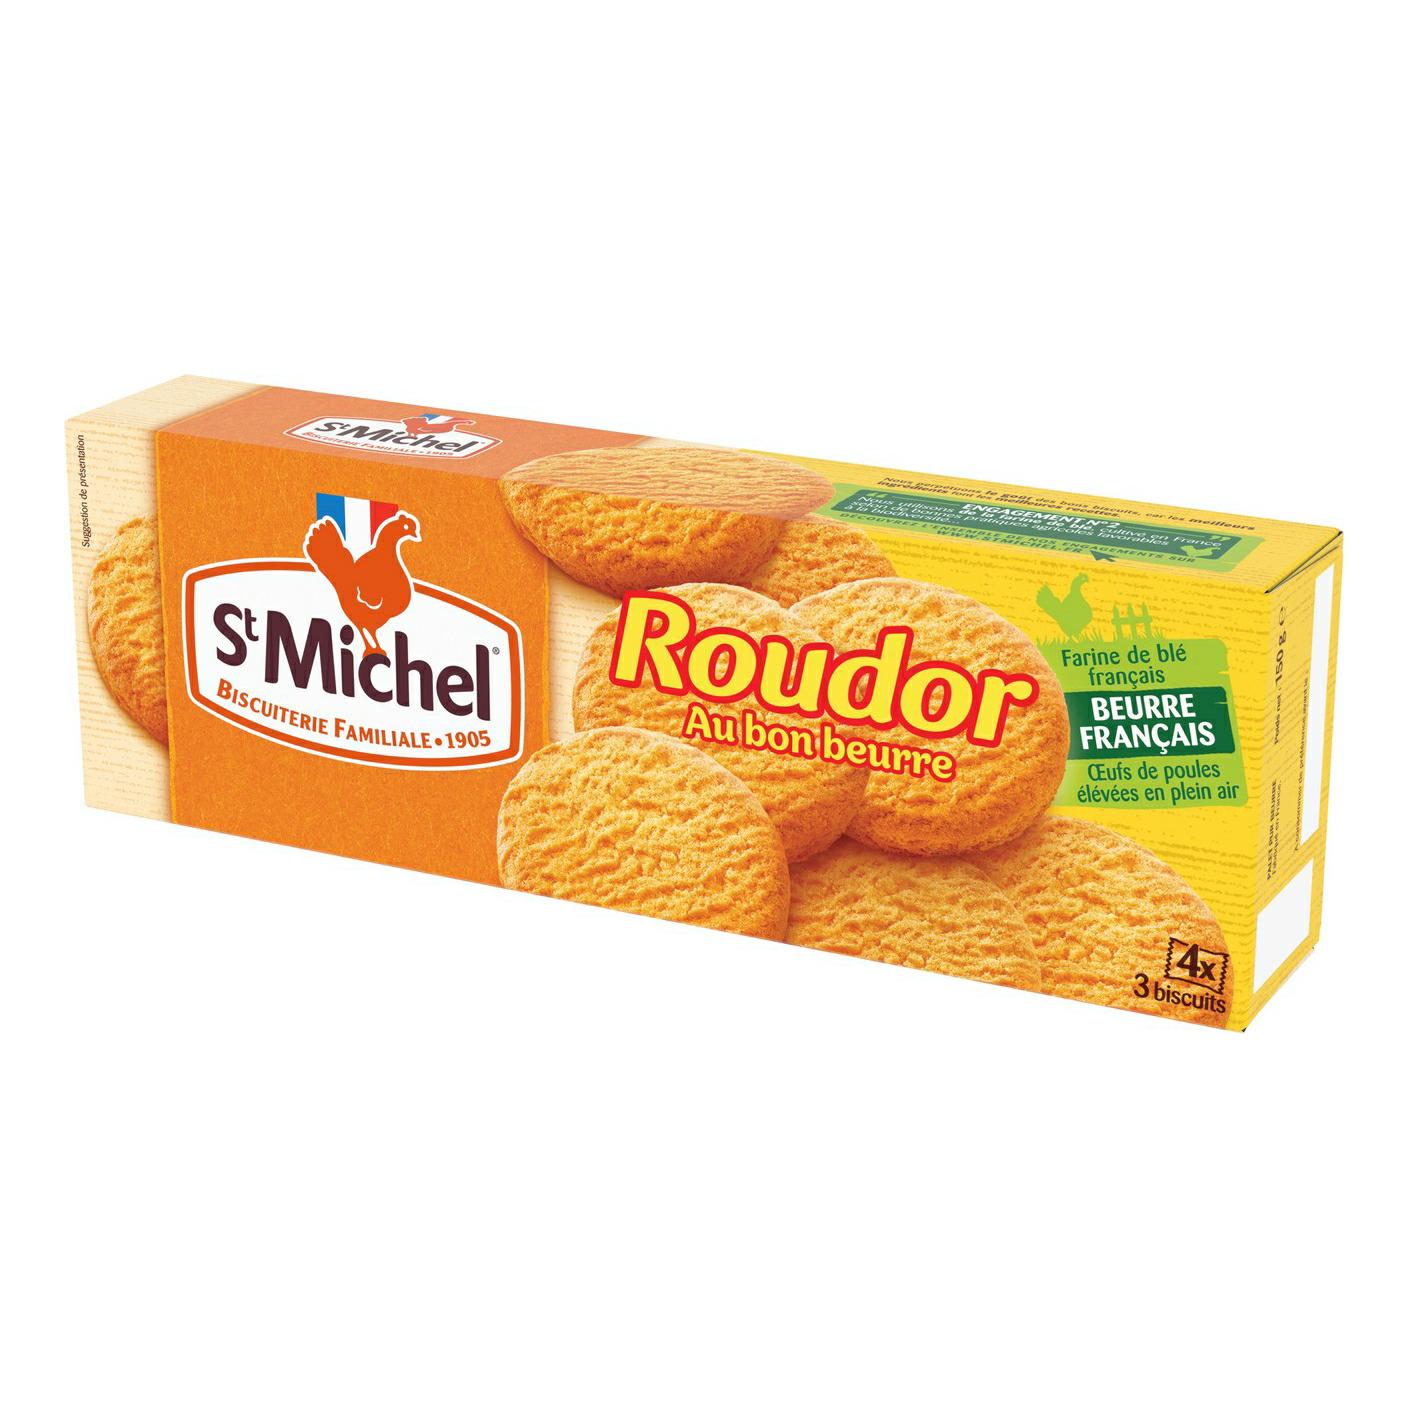 Печенье StMichel Roudor французское песочное 150 гр., картон